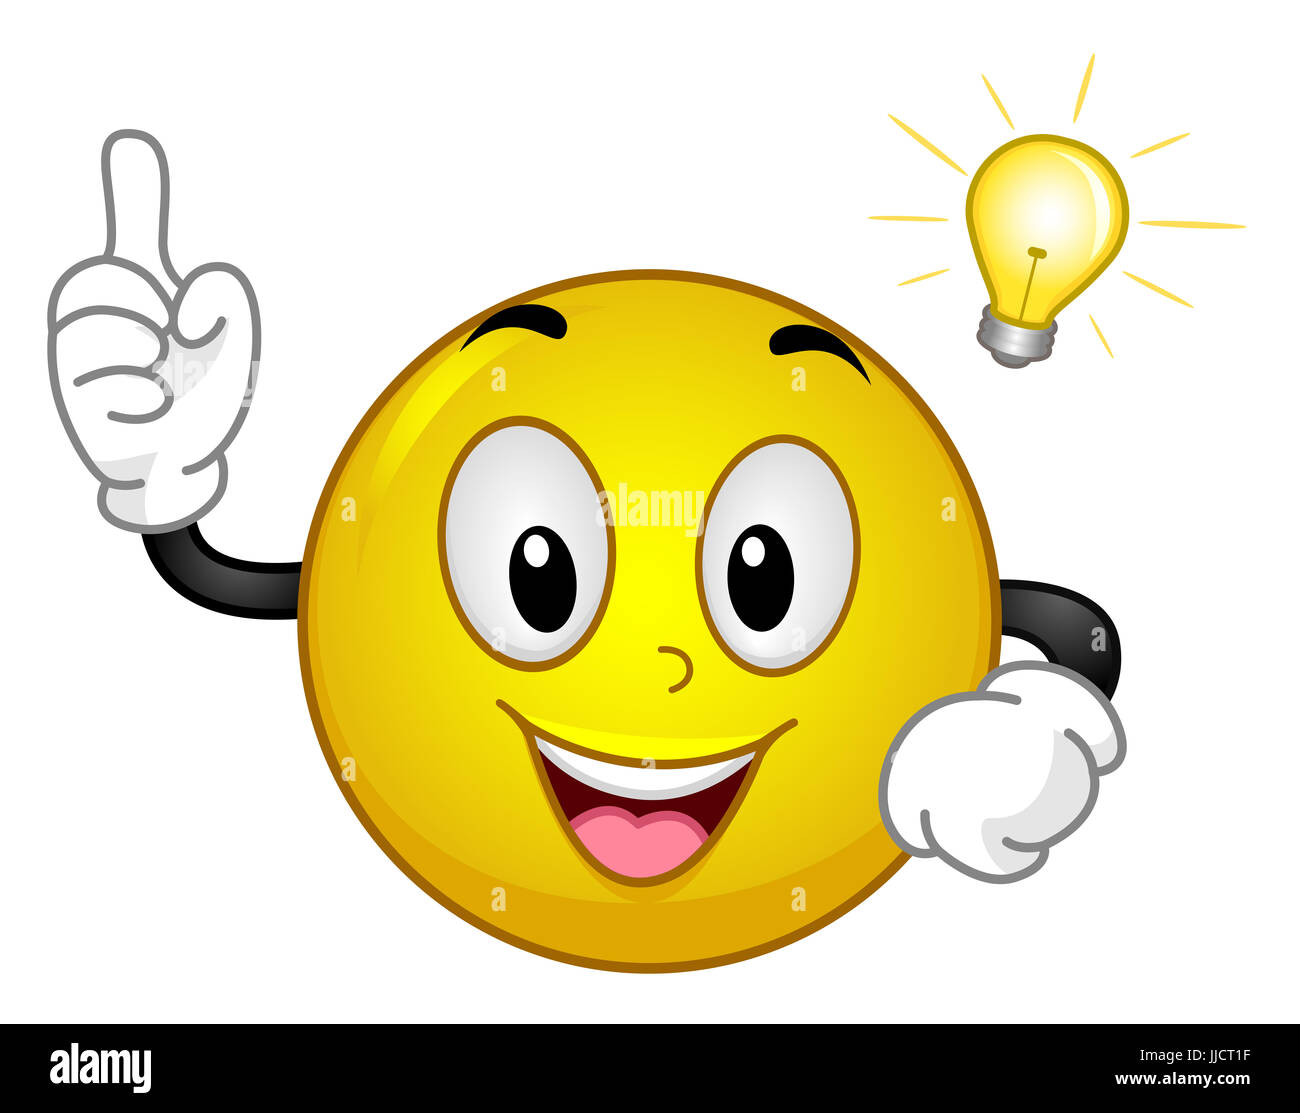 Maskottchen Abbildung einer aufgeregt gelbe Smiley mit ein Aha Moment  halten, sein Zeigefinger während ein Glühbirne schwebt über dem Kopf  Stockfotografie - Alamy